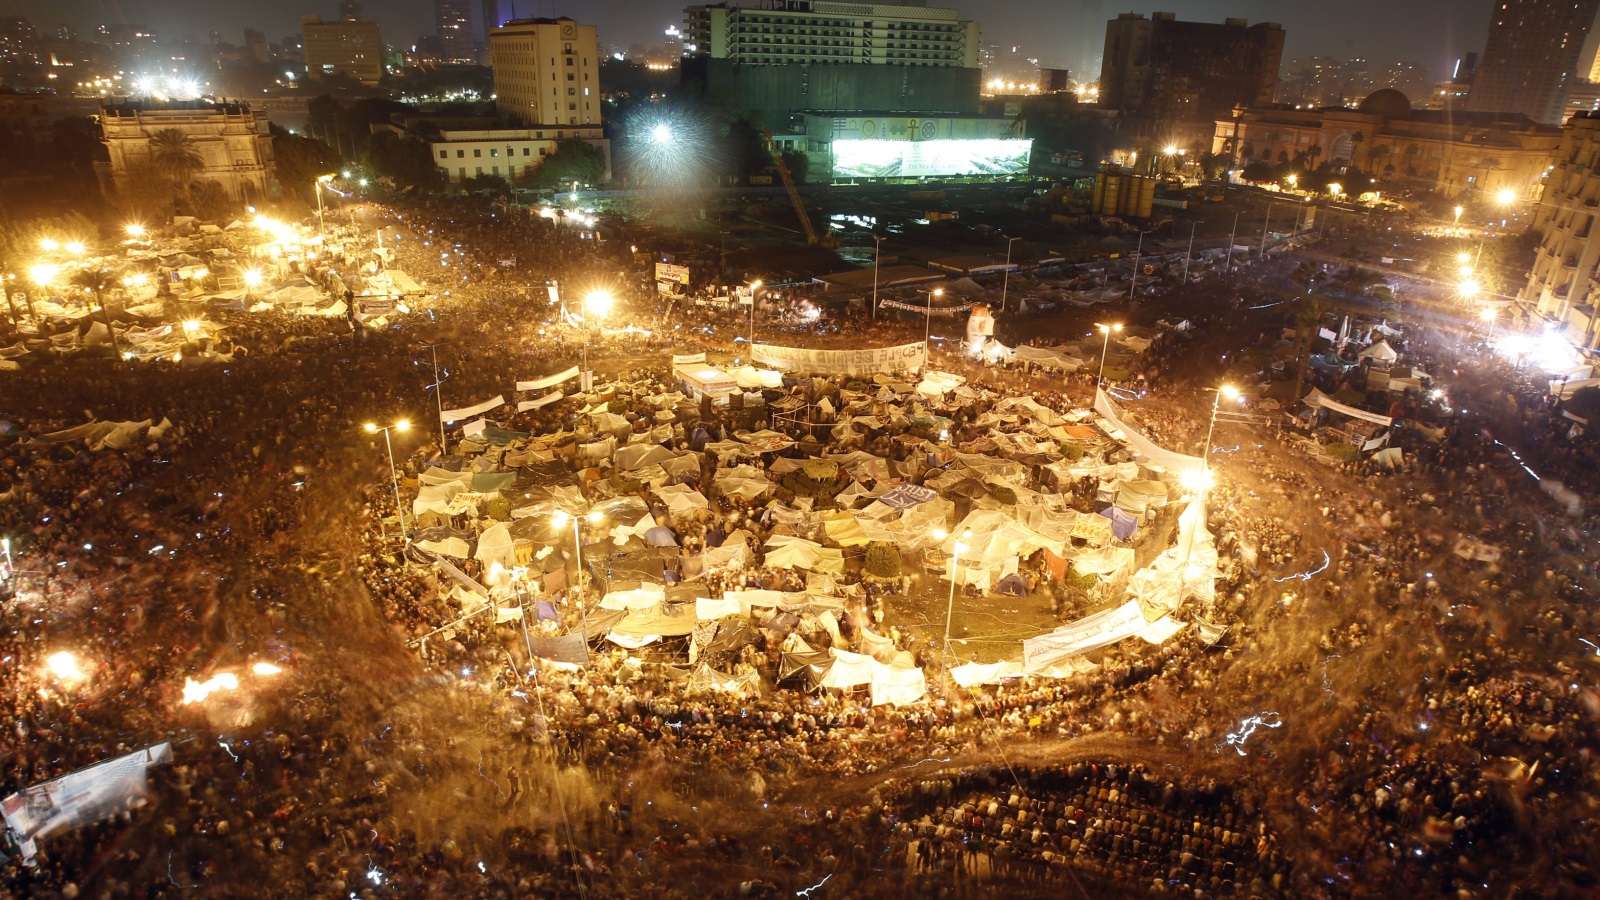 في يناير قرر الناس العاديون إعادة حشد أنفسهم في تلك المساحات التي تريد السلطة احتلالها وأخذها عنوة، وكان اعتصام ميدان التحرير أكبر مثال على ذلك الأمر